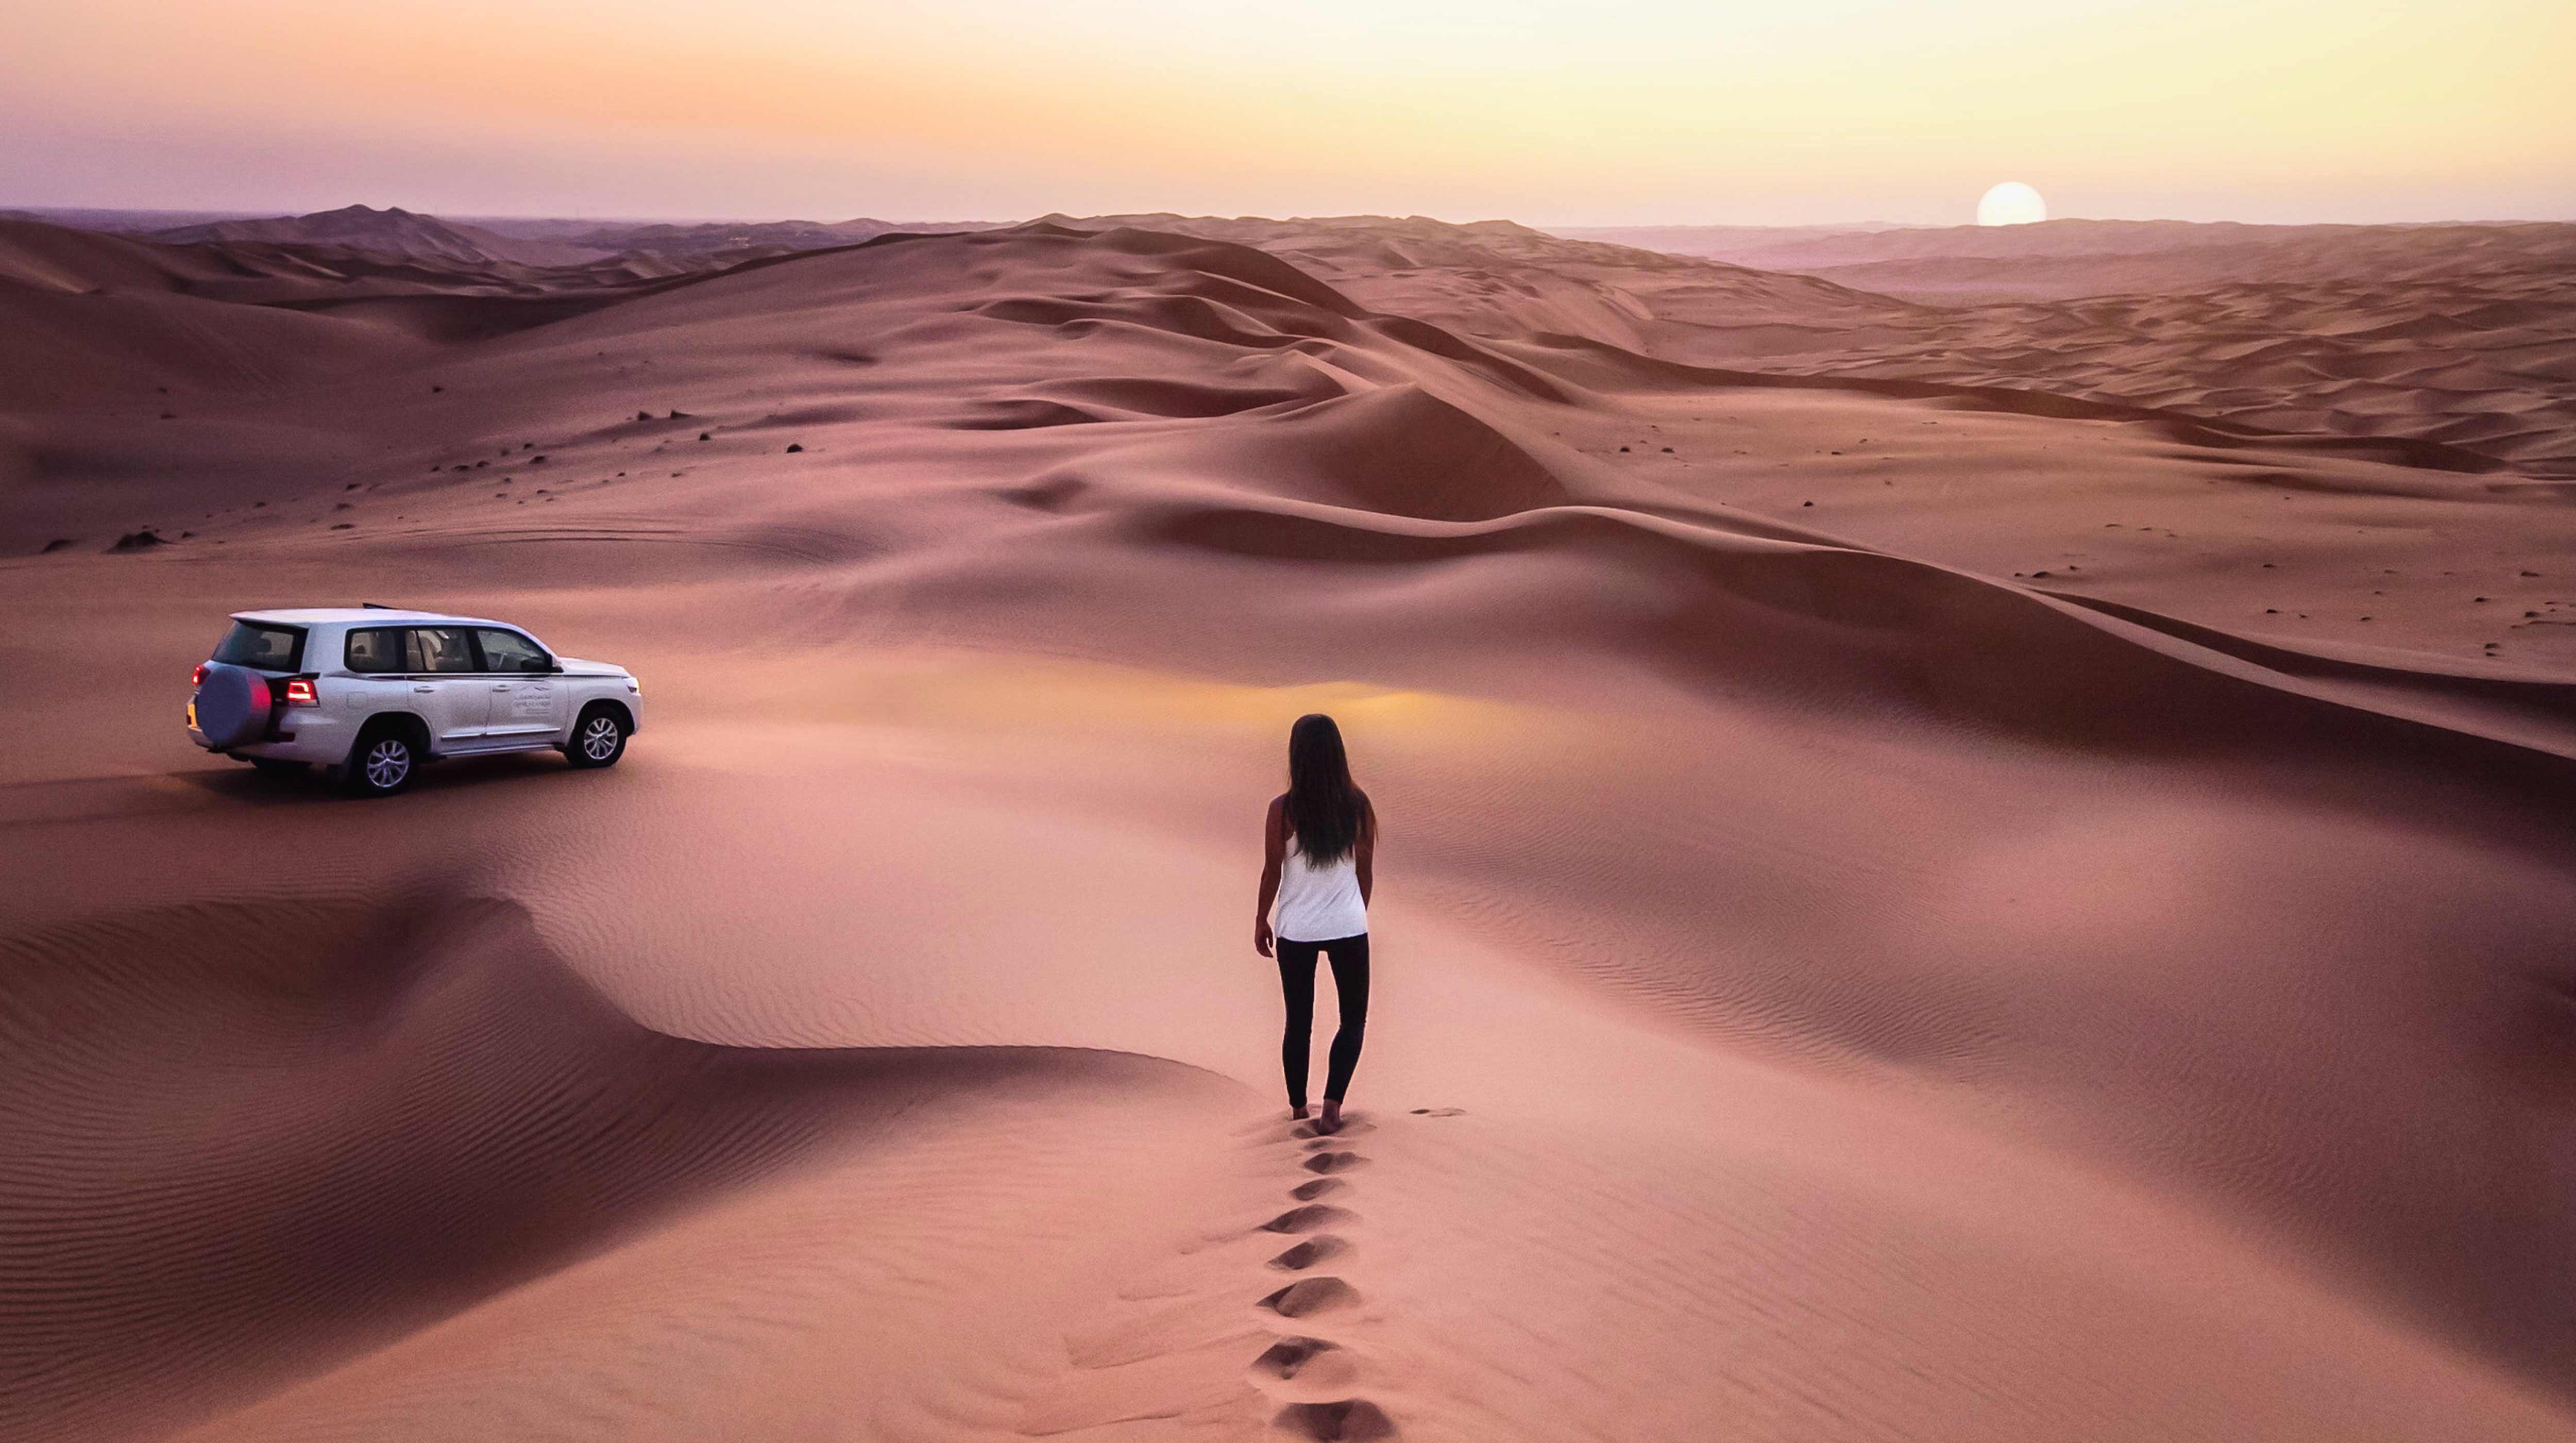 Abu Dhabi Desert Guide